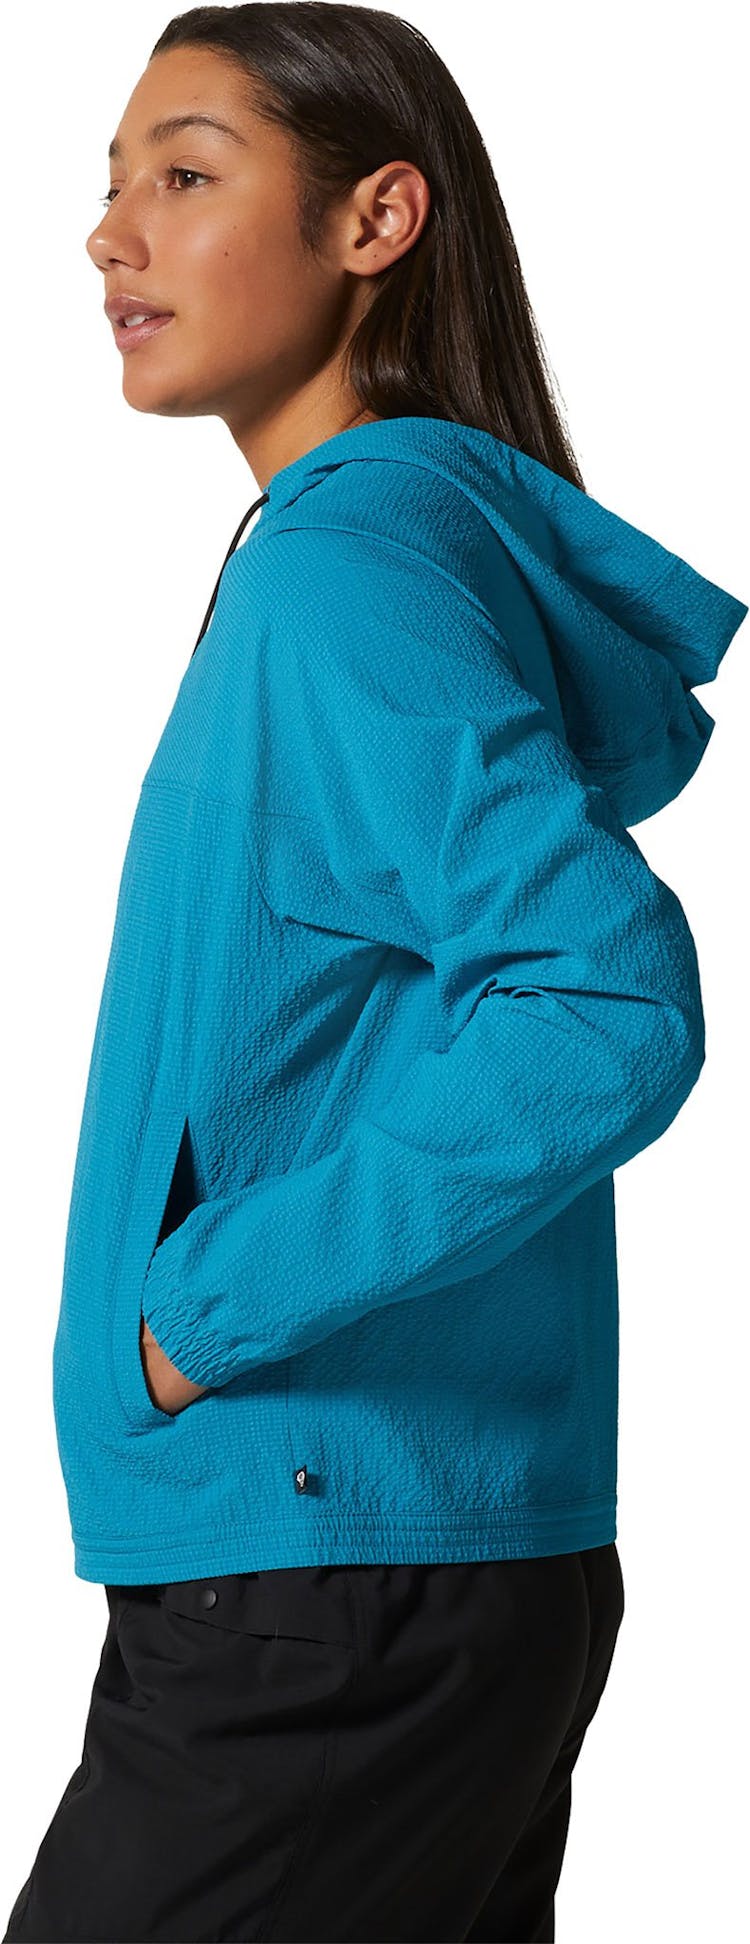 Numéro de l'image de la galerie de produits 4 pour le produit Sweat à capuche zippé Sunshadow™ - Femme